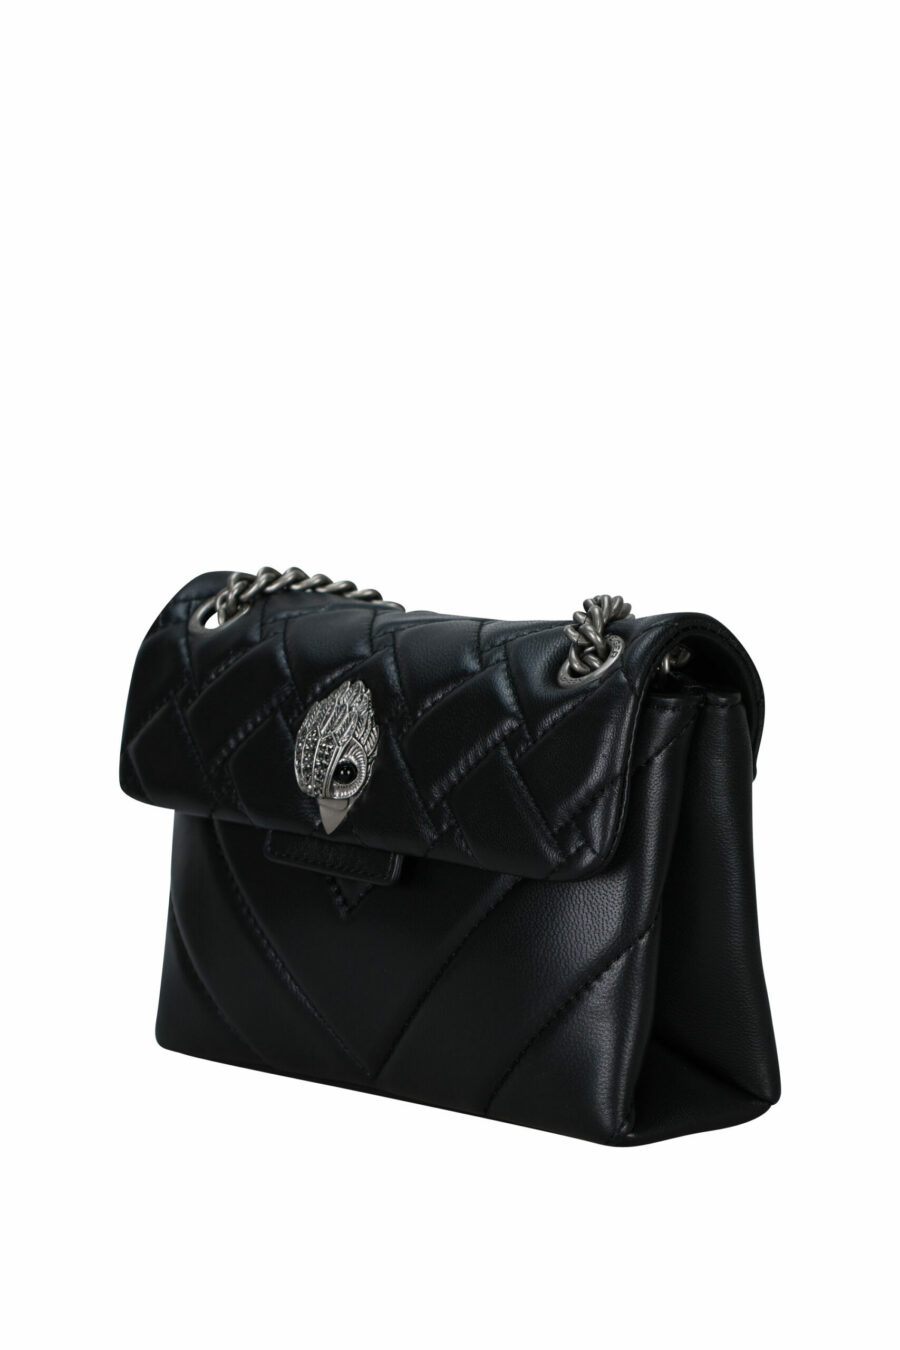 Mini sac à bandoulière matelassé noir avec logo aigle argenté et cristaux noirs - 5045065997525 1 échelle